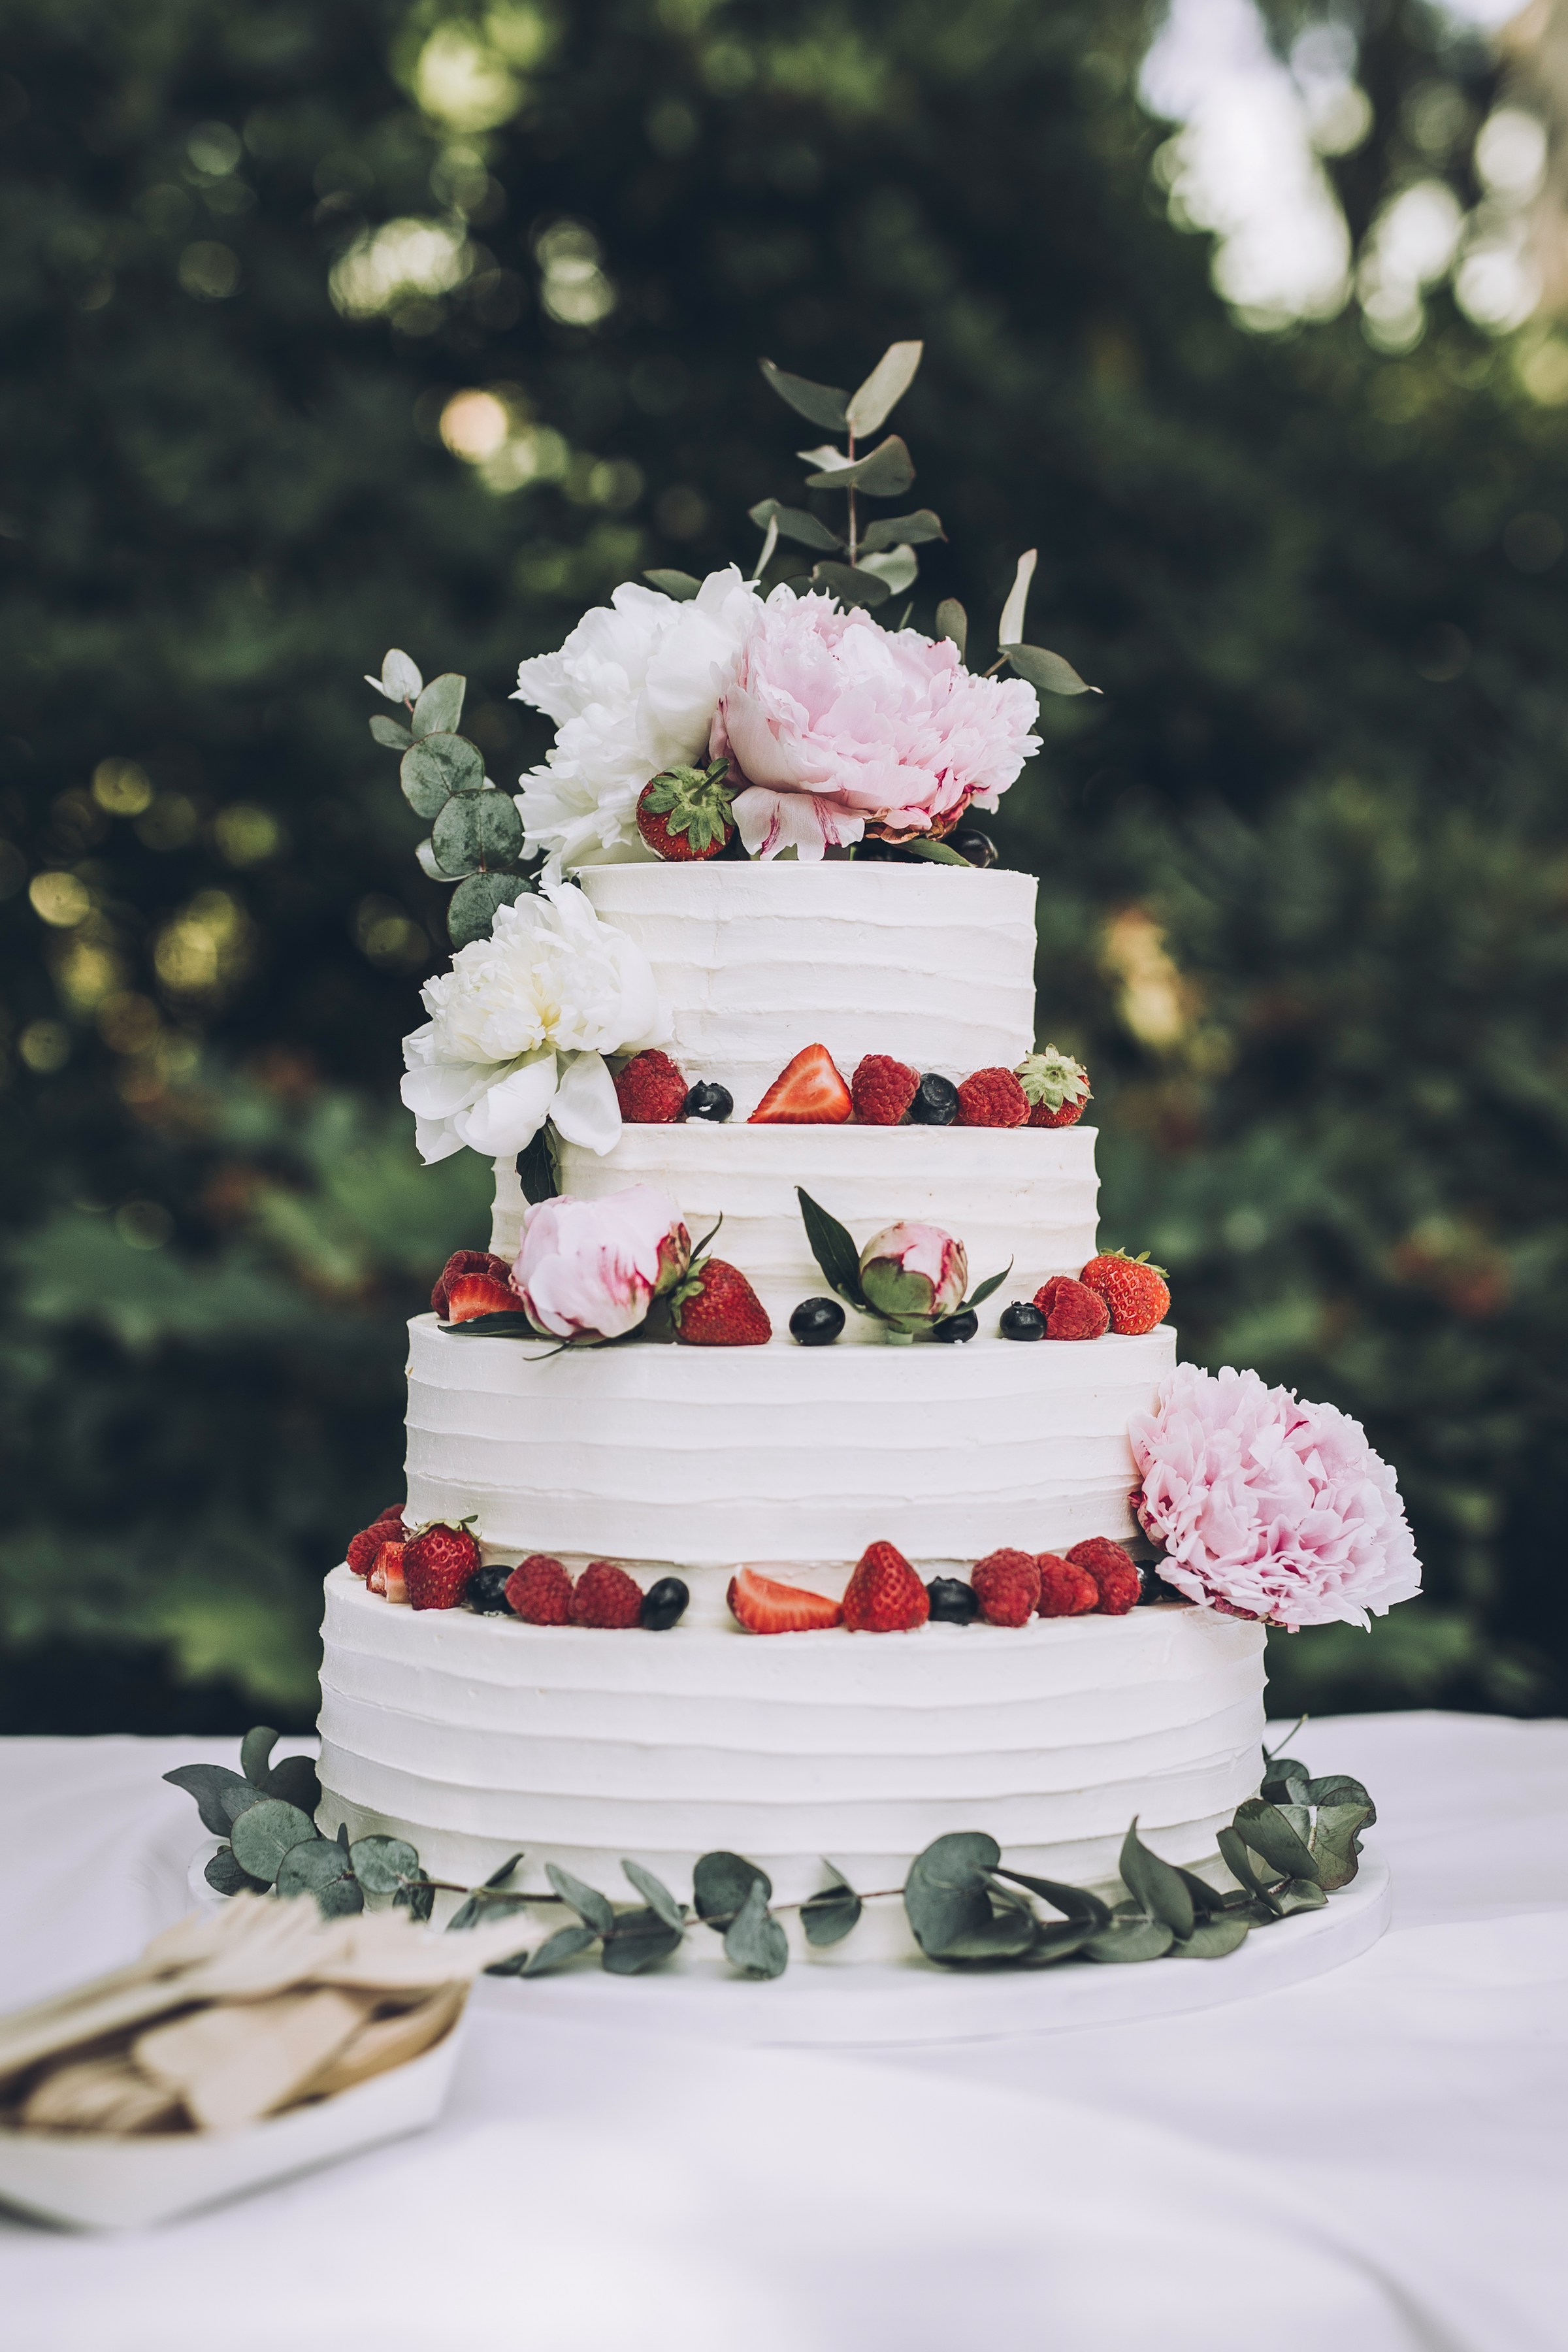 Un gâteau de mariage blanc avec des fruits | Source : Unsplash